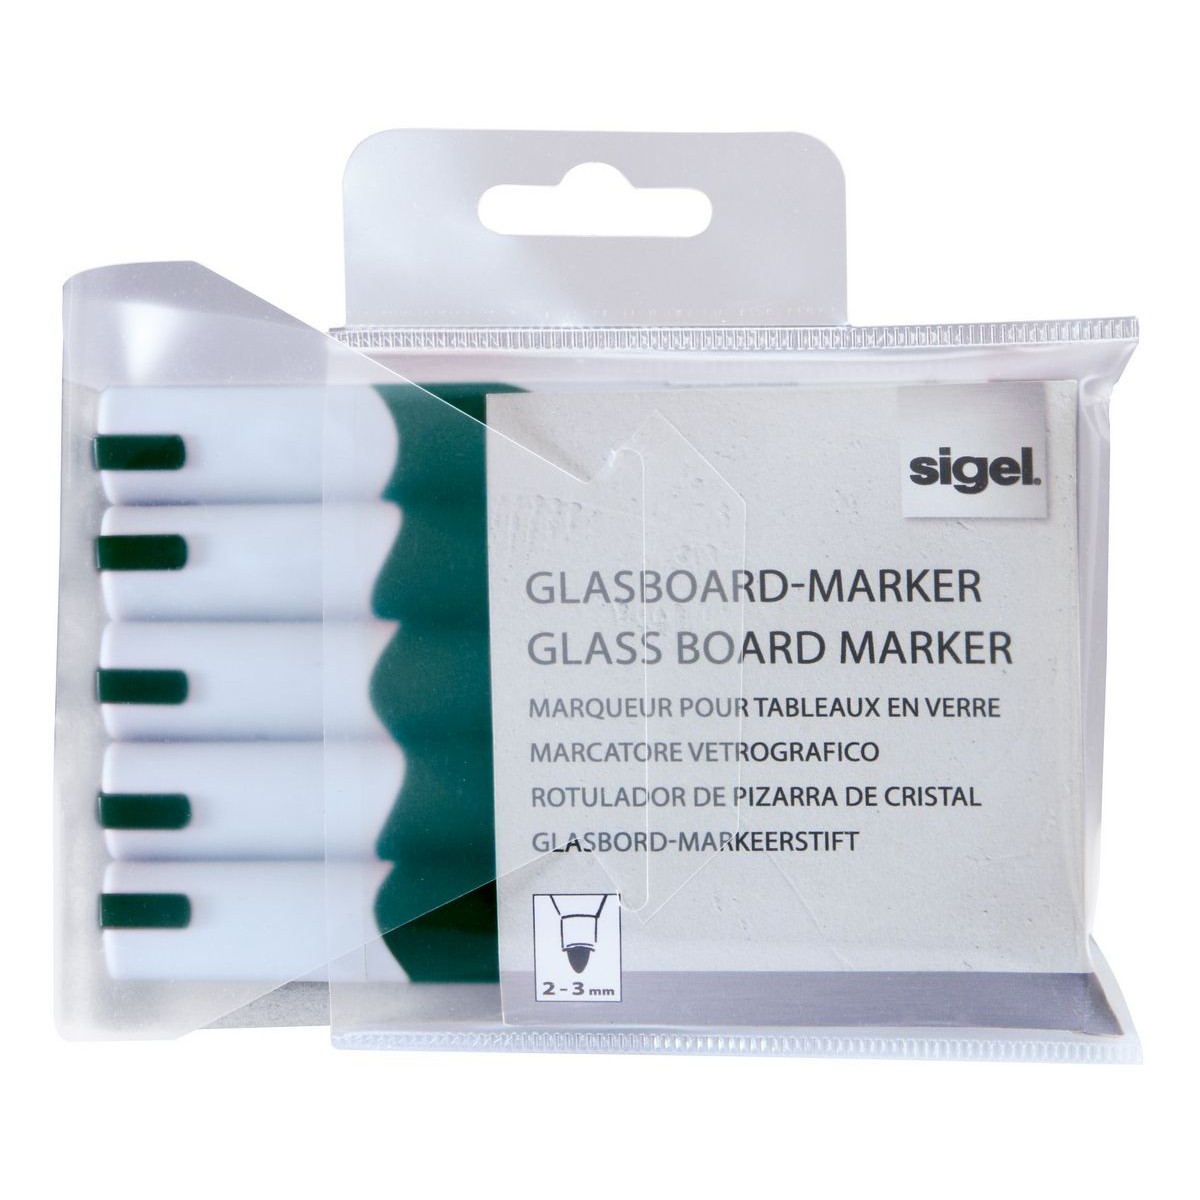 GL714 - Sigel - Glass Board Markers, 2-3 mm round nib - Green